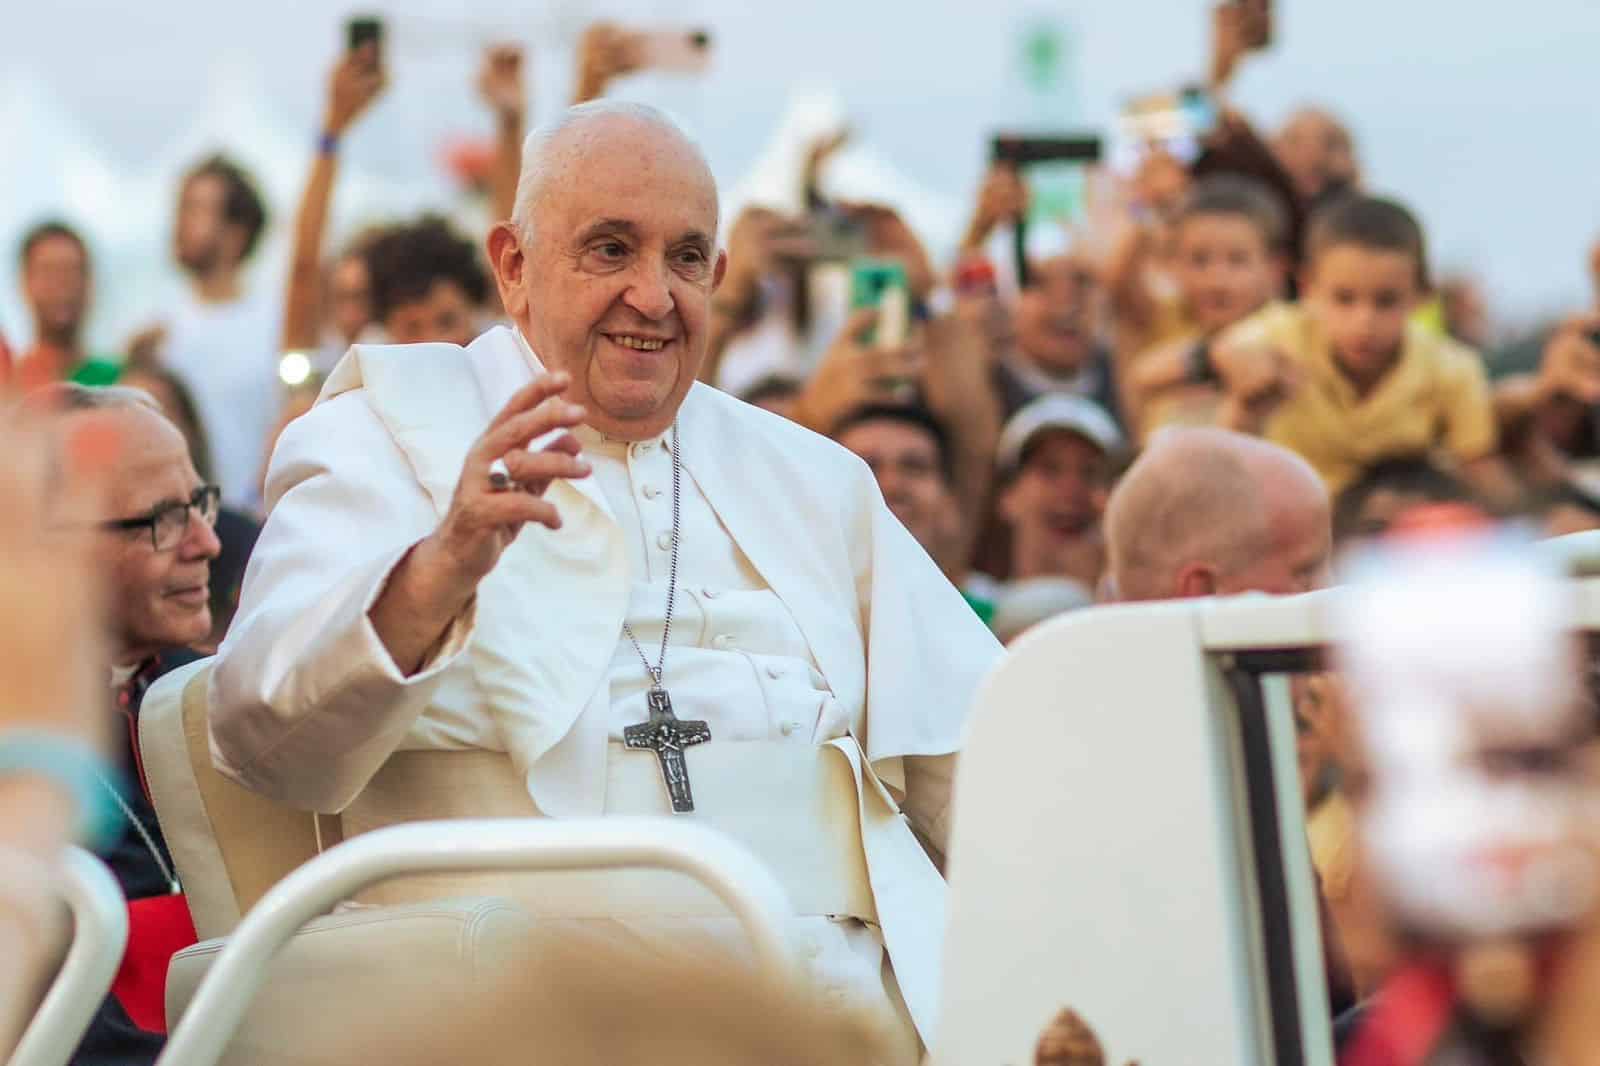 Levántate y camina sin miedo: el hermoso mensaje del Papa a un millón de jóvenes